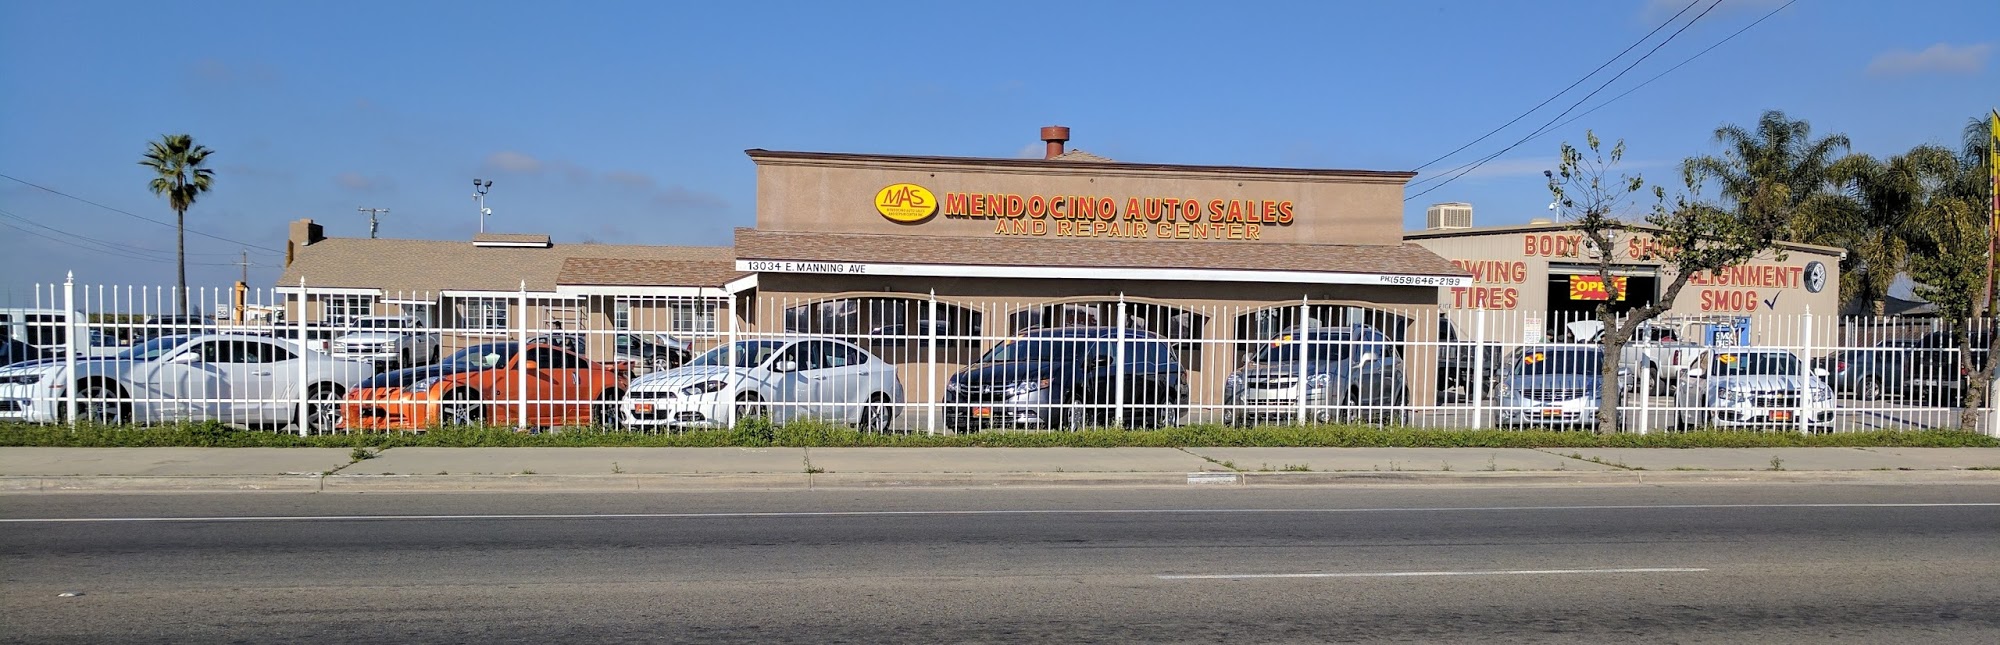 Mendocino Auto Sales & Repair